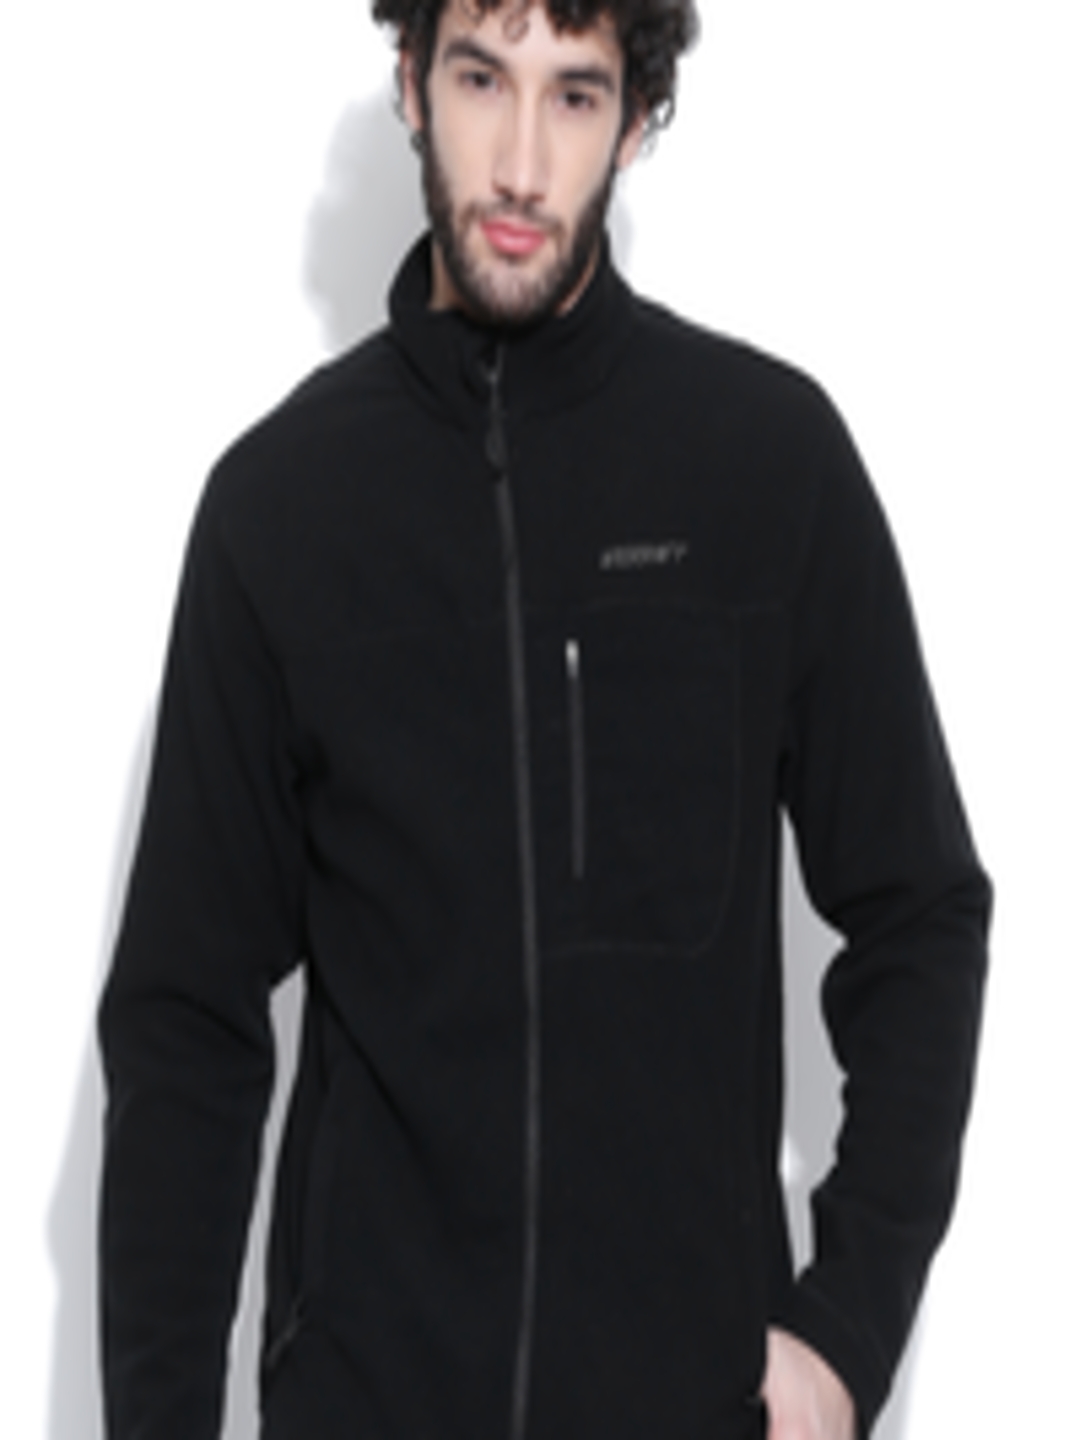 Buy Wildcraft Black Fleece 14 Jacket - Jackets for Men 526920 | Myntra